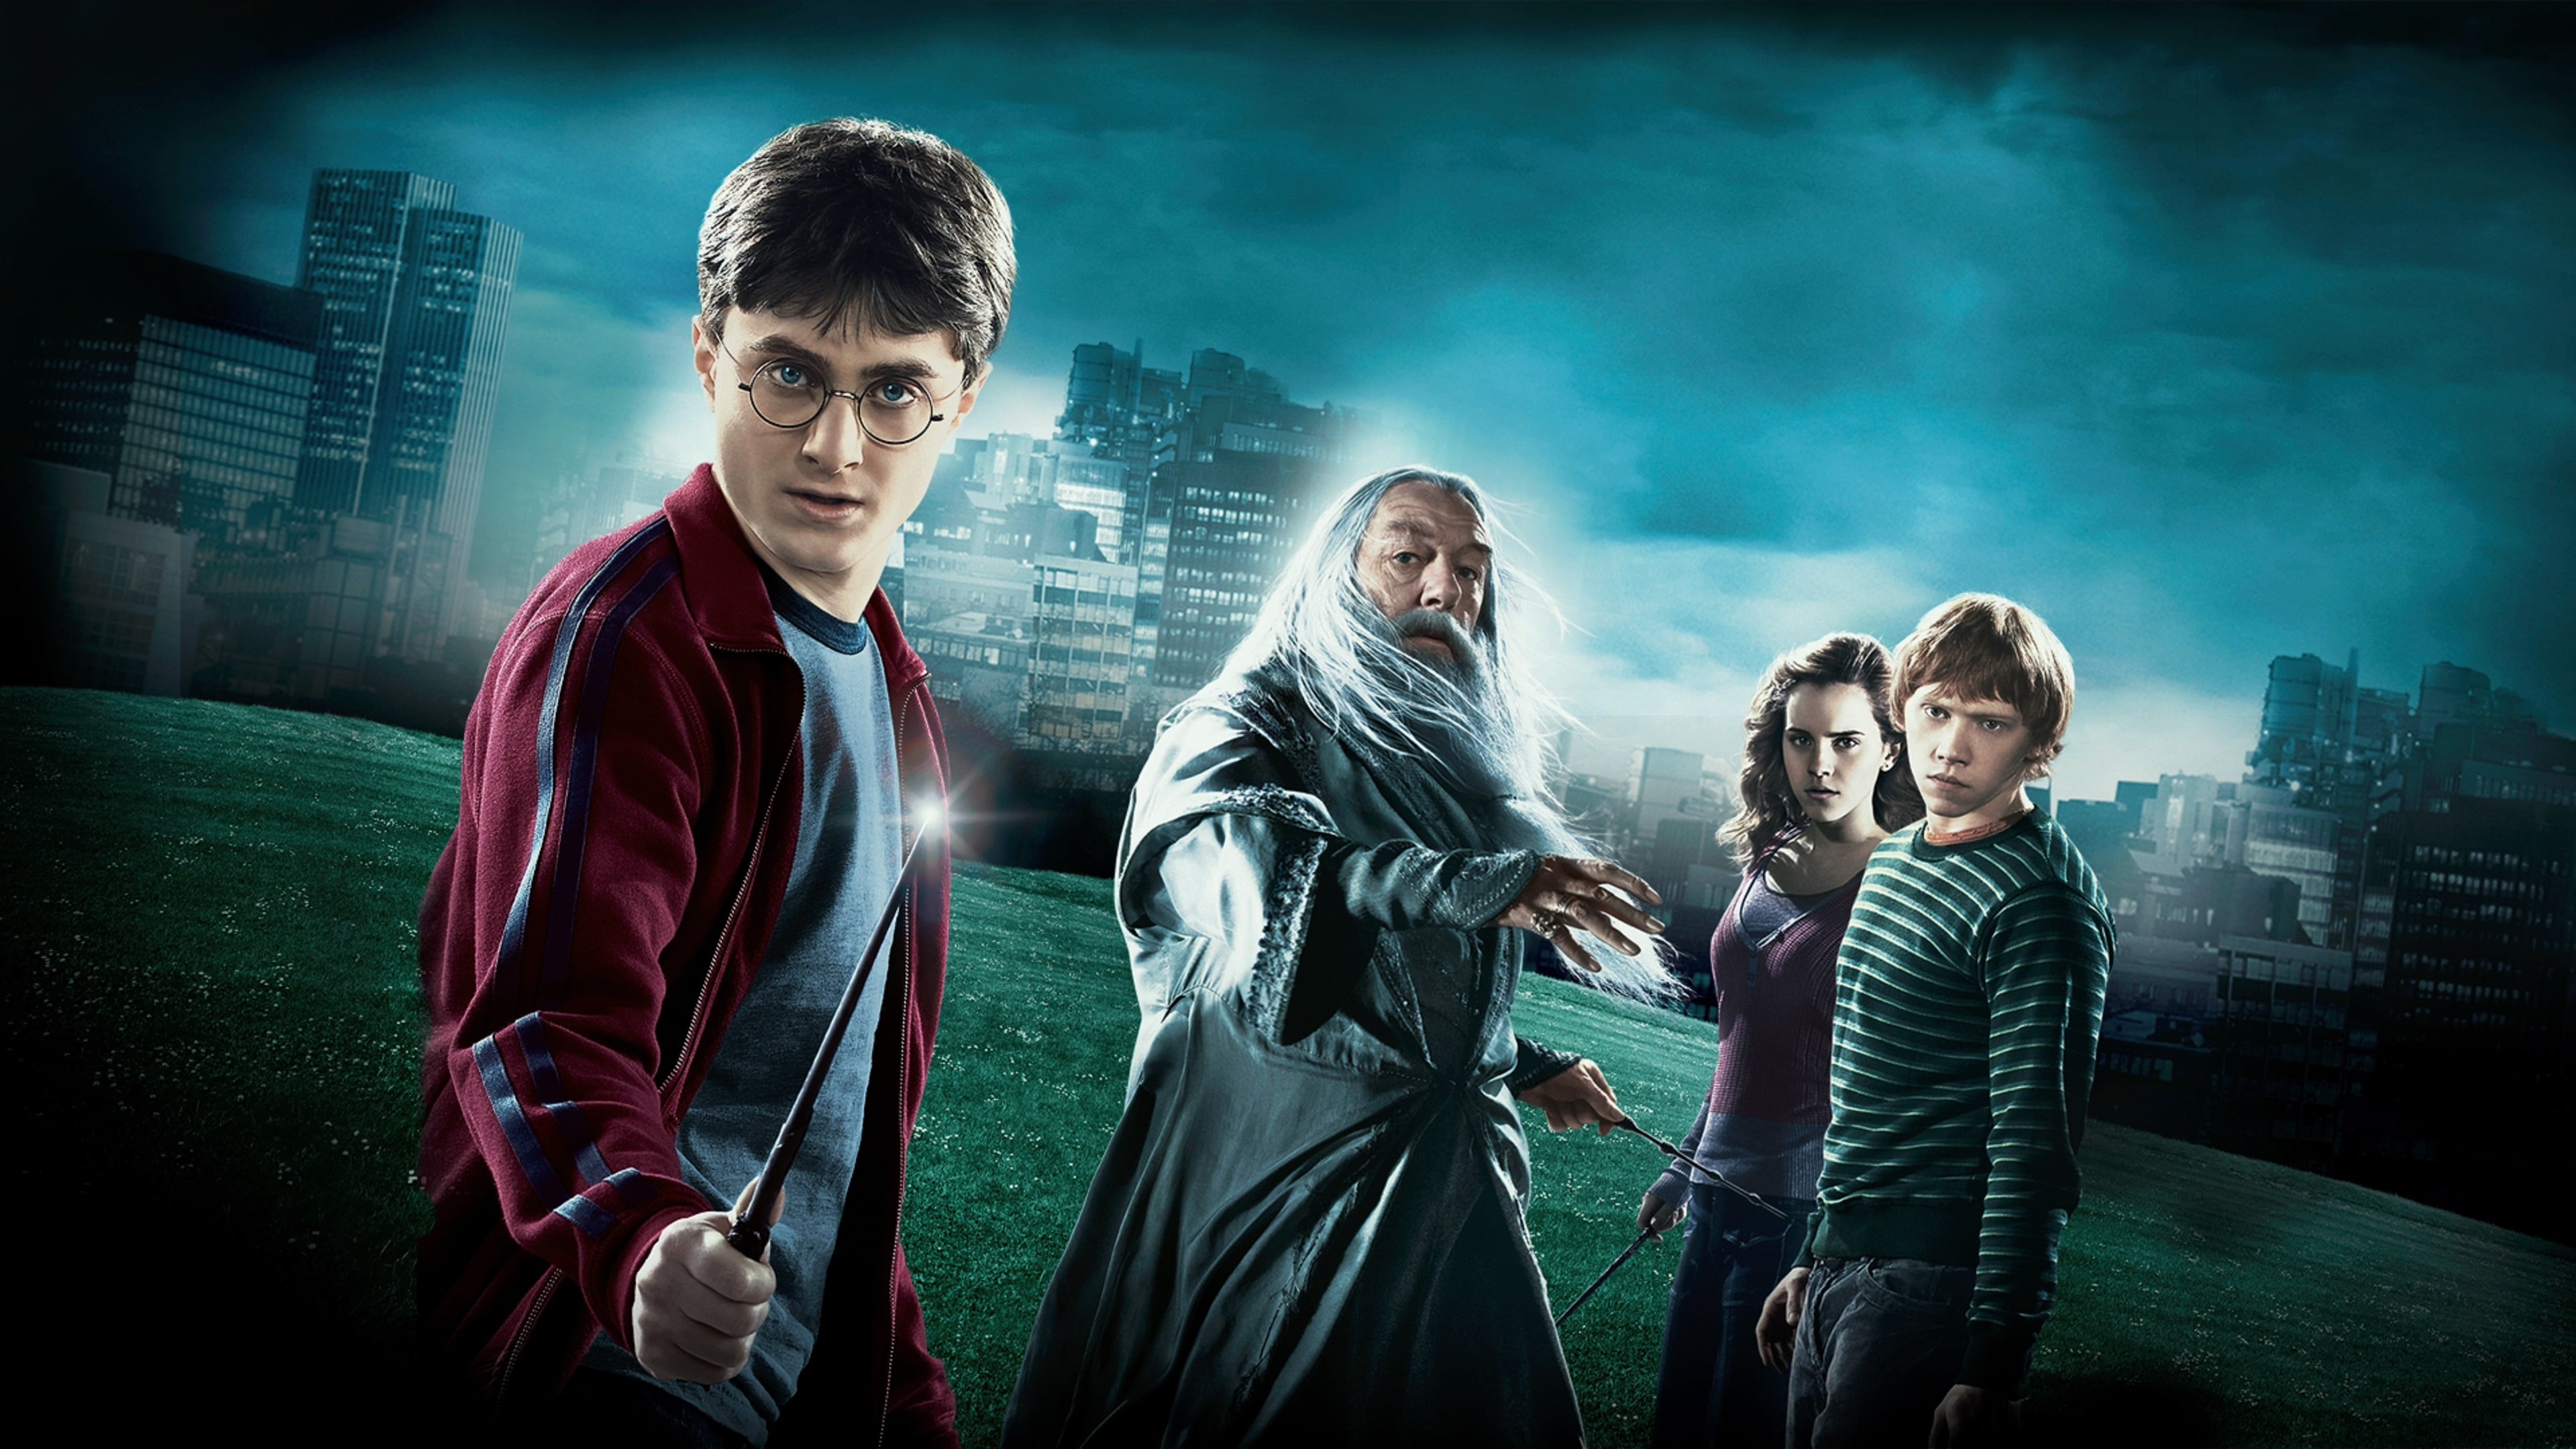 Harry Potter et le prince de sang-mêlé (Film, 2009) — CinéSéries